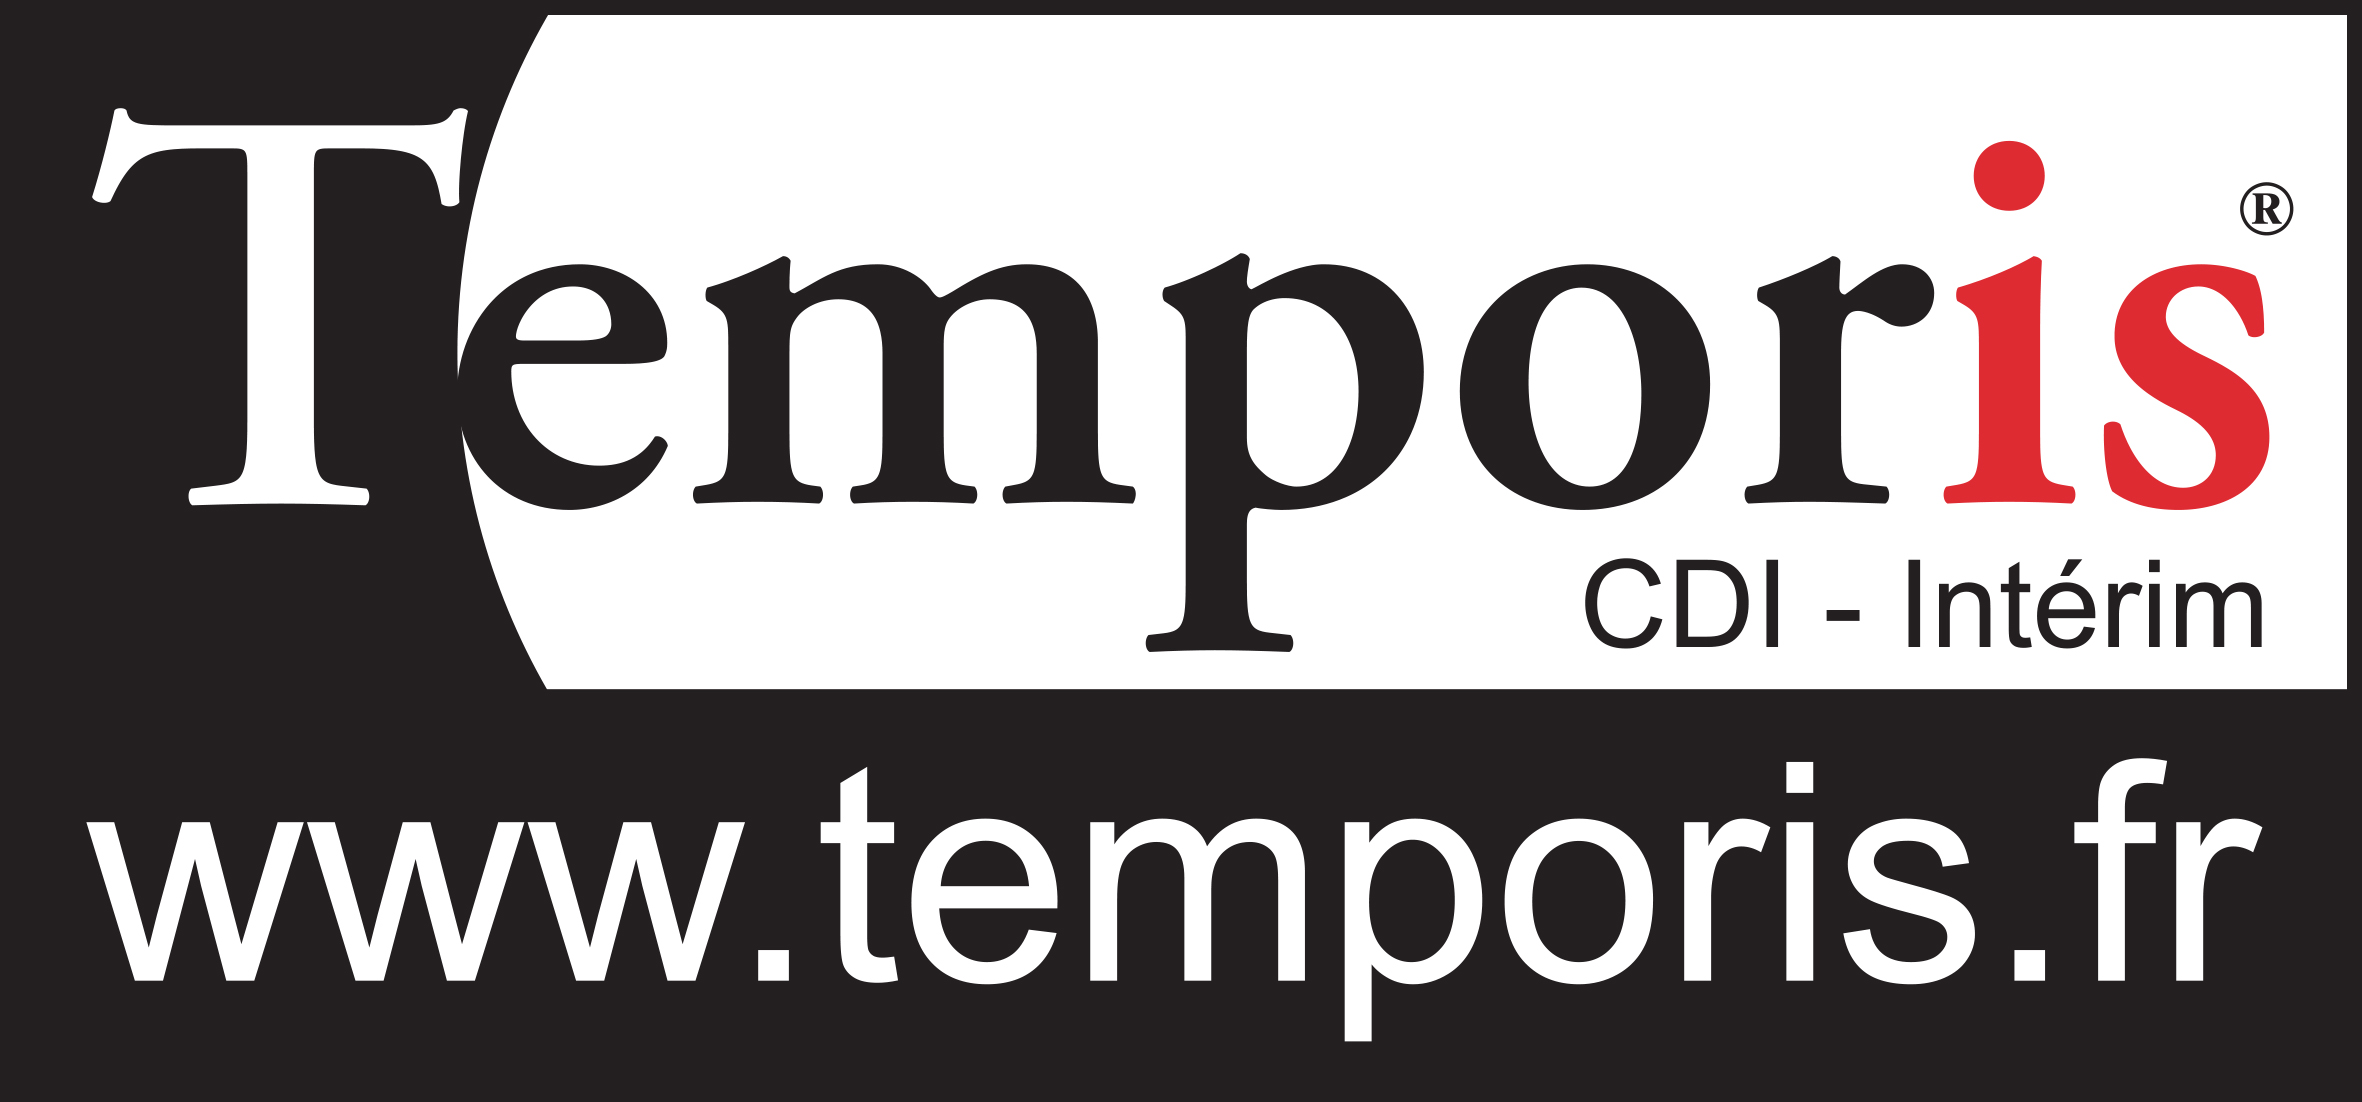 id19 - Temporis.jpg